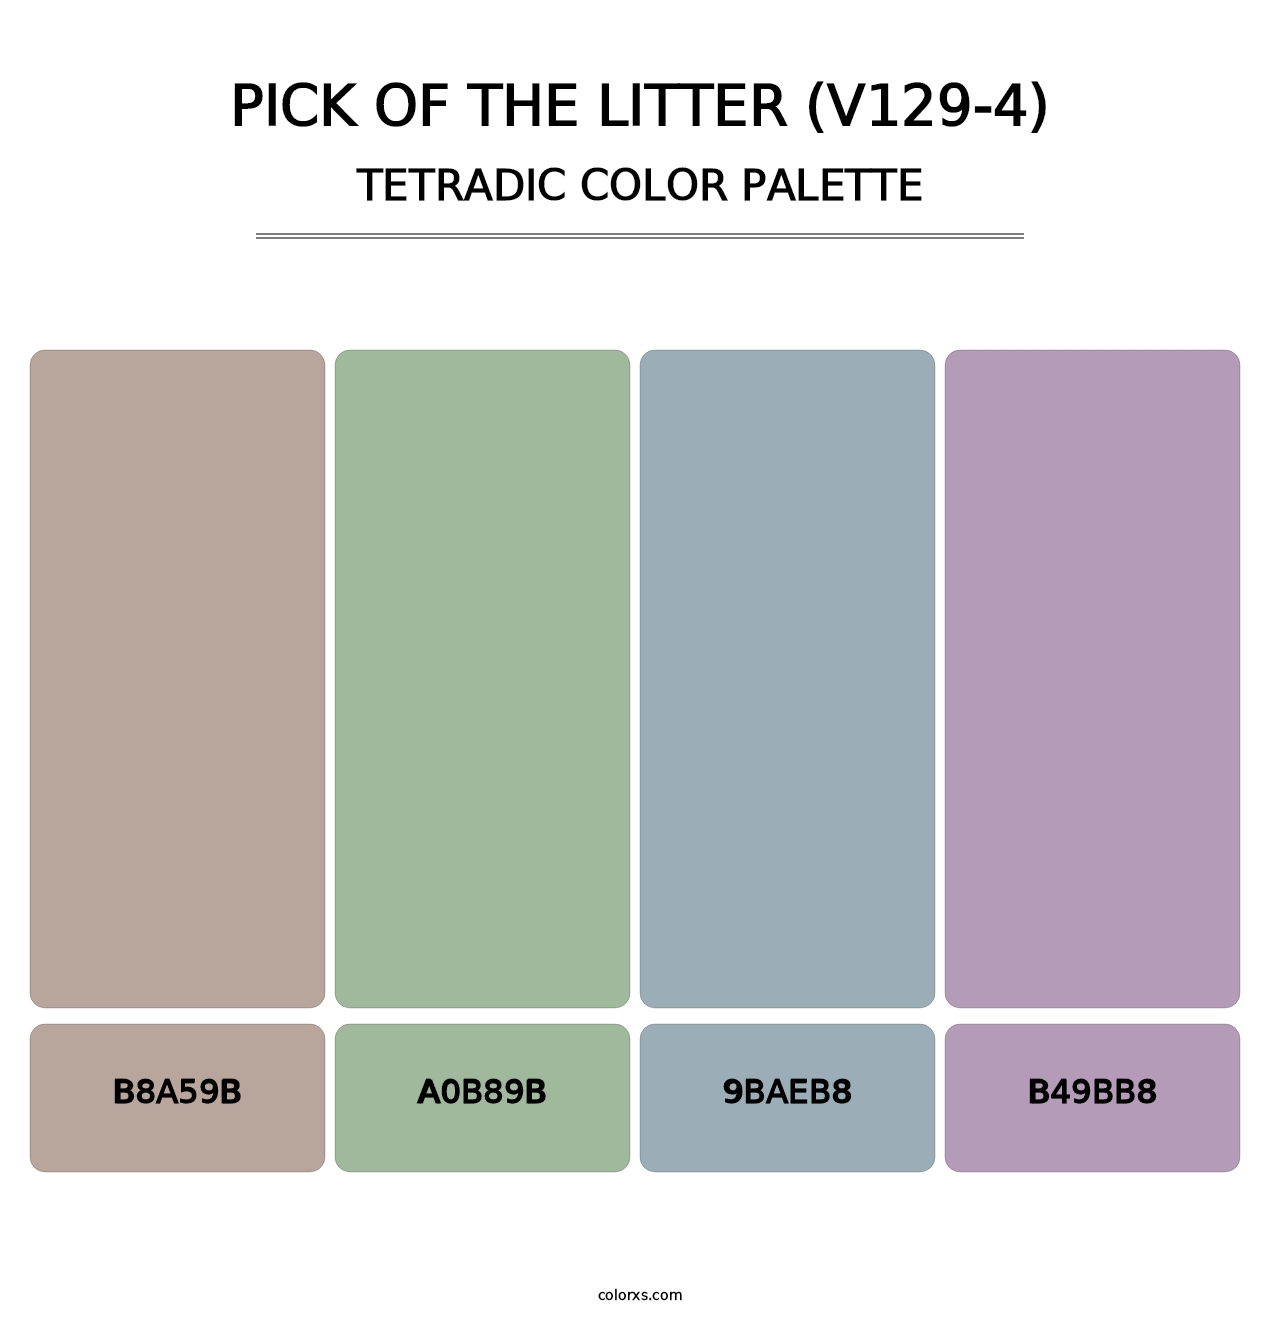 Pick of the Litter (V129-4) - Tetradic Color Palette